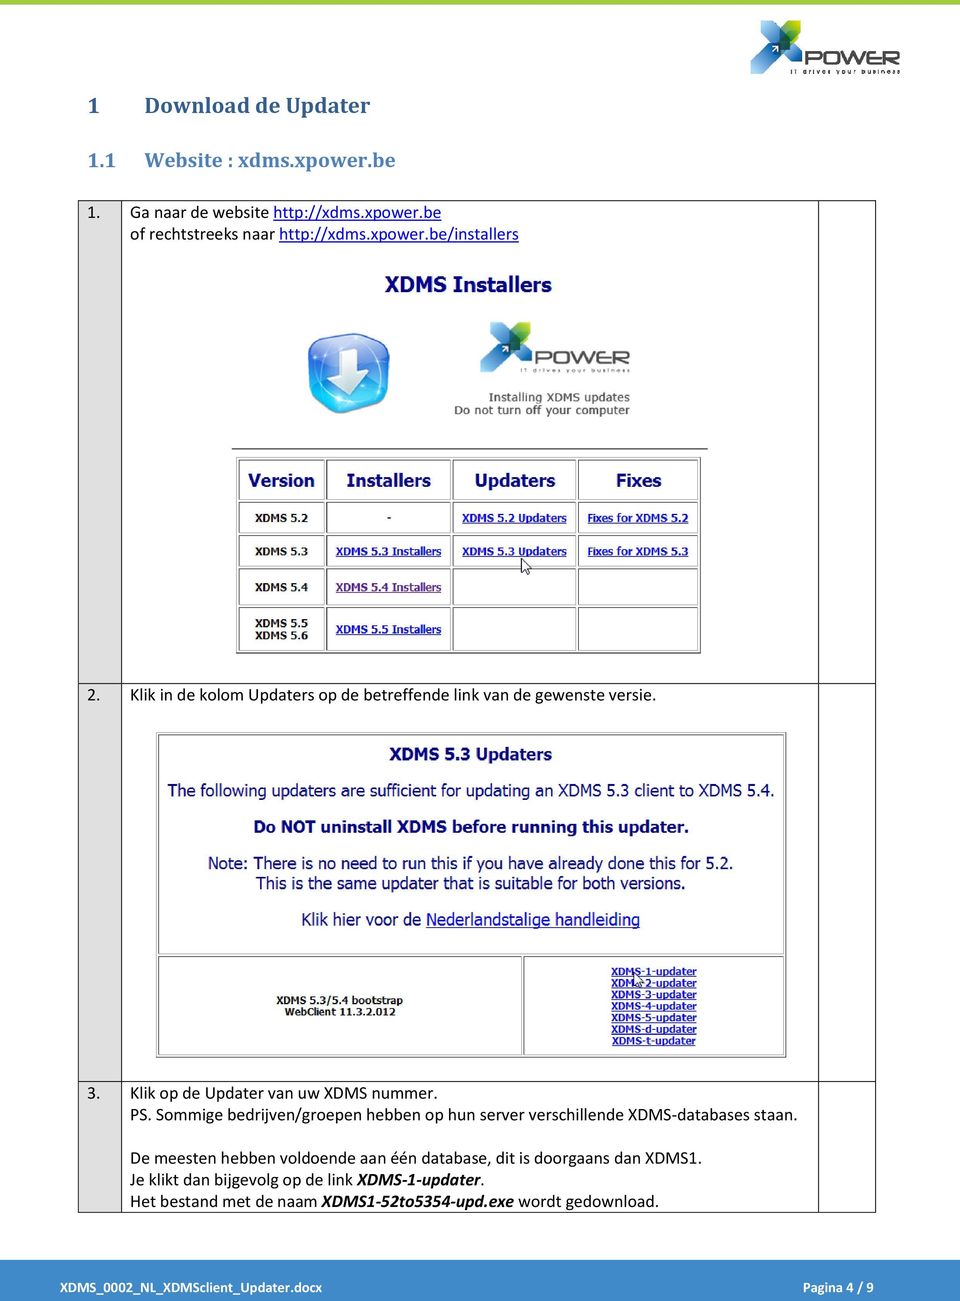 Sommige bedrijven/groepen hebben op hun server verschillende XDMS-databases staan.